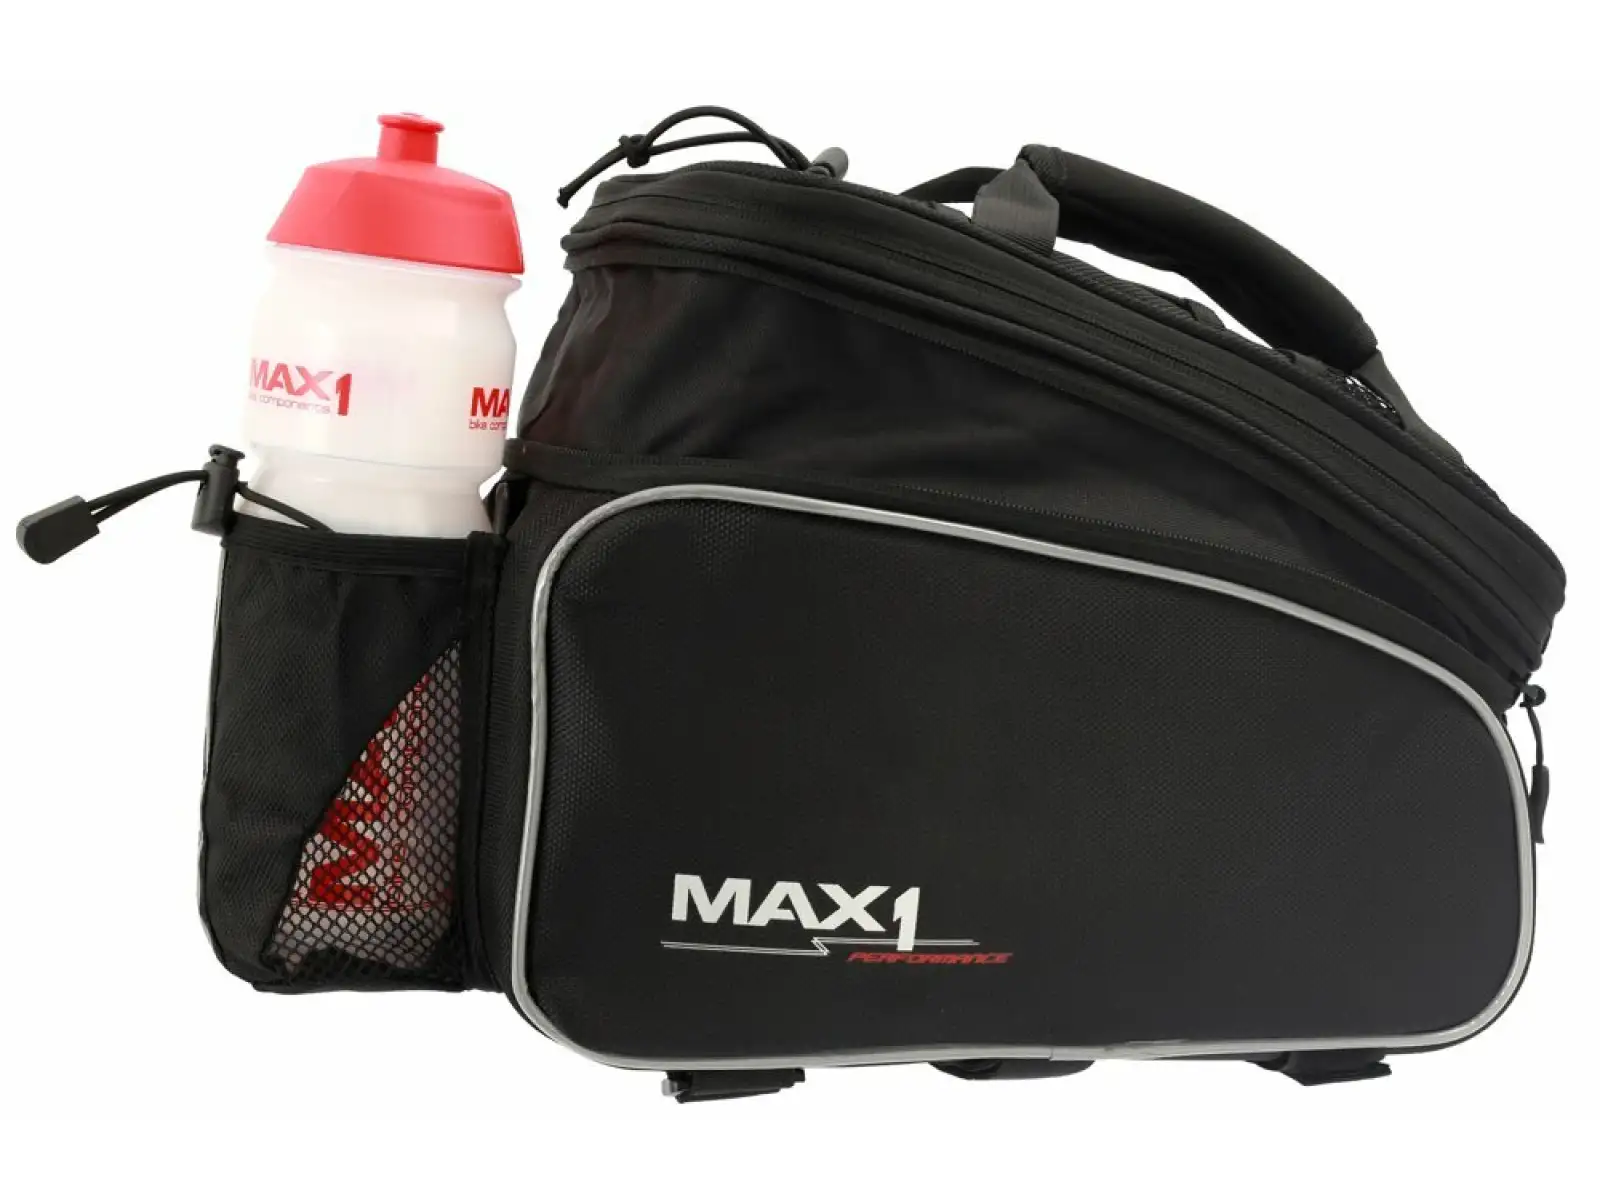 Max1 Rackbag brašna na nosič černá 9,6 l